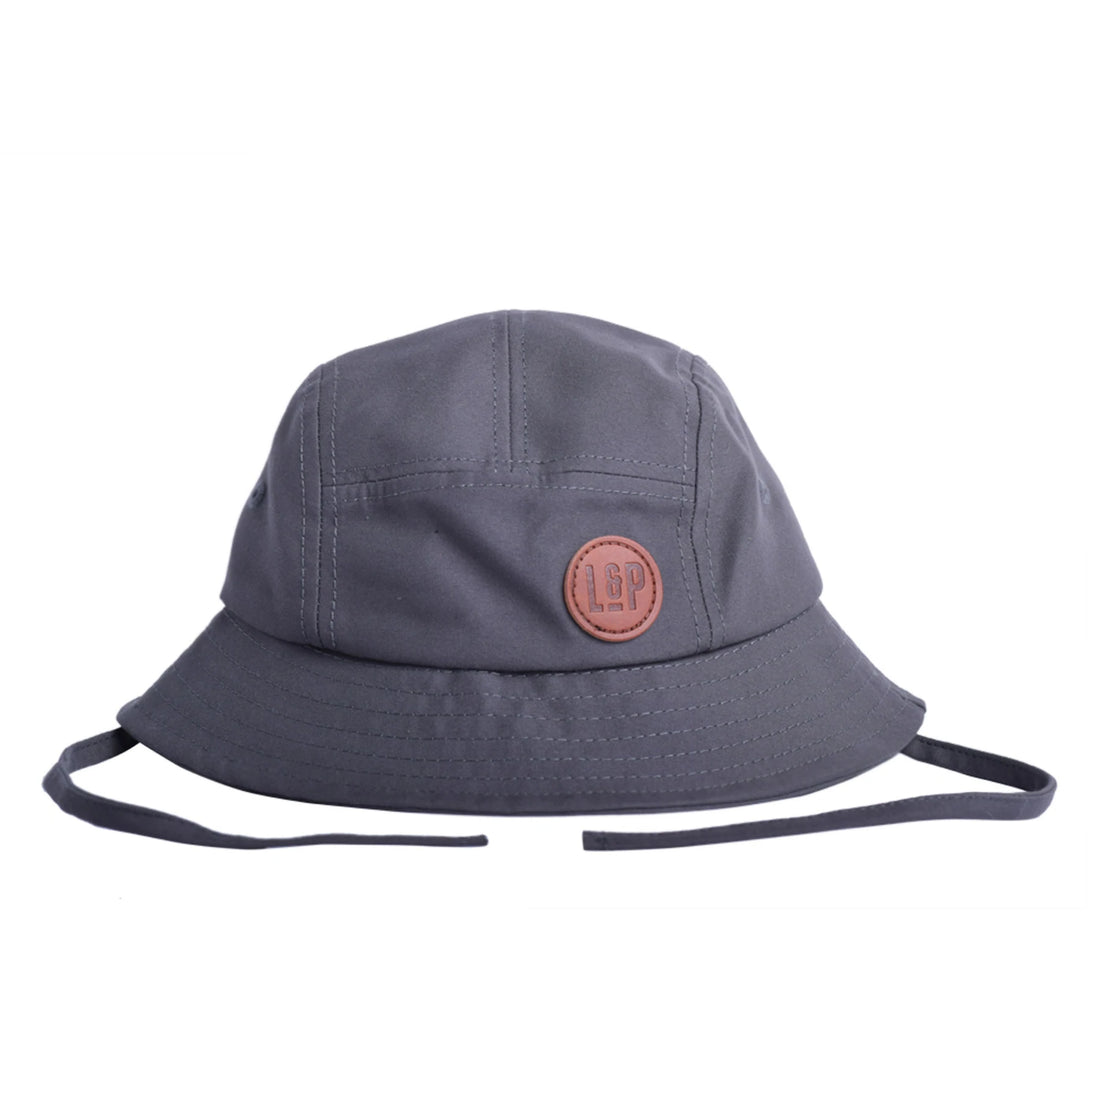 L&P chapeau de rue